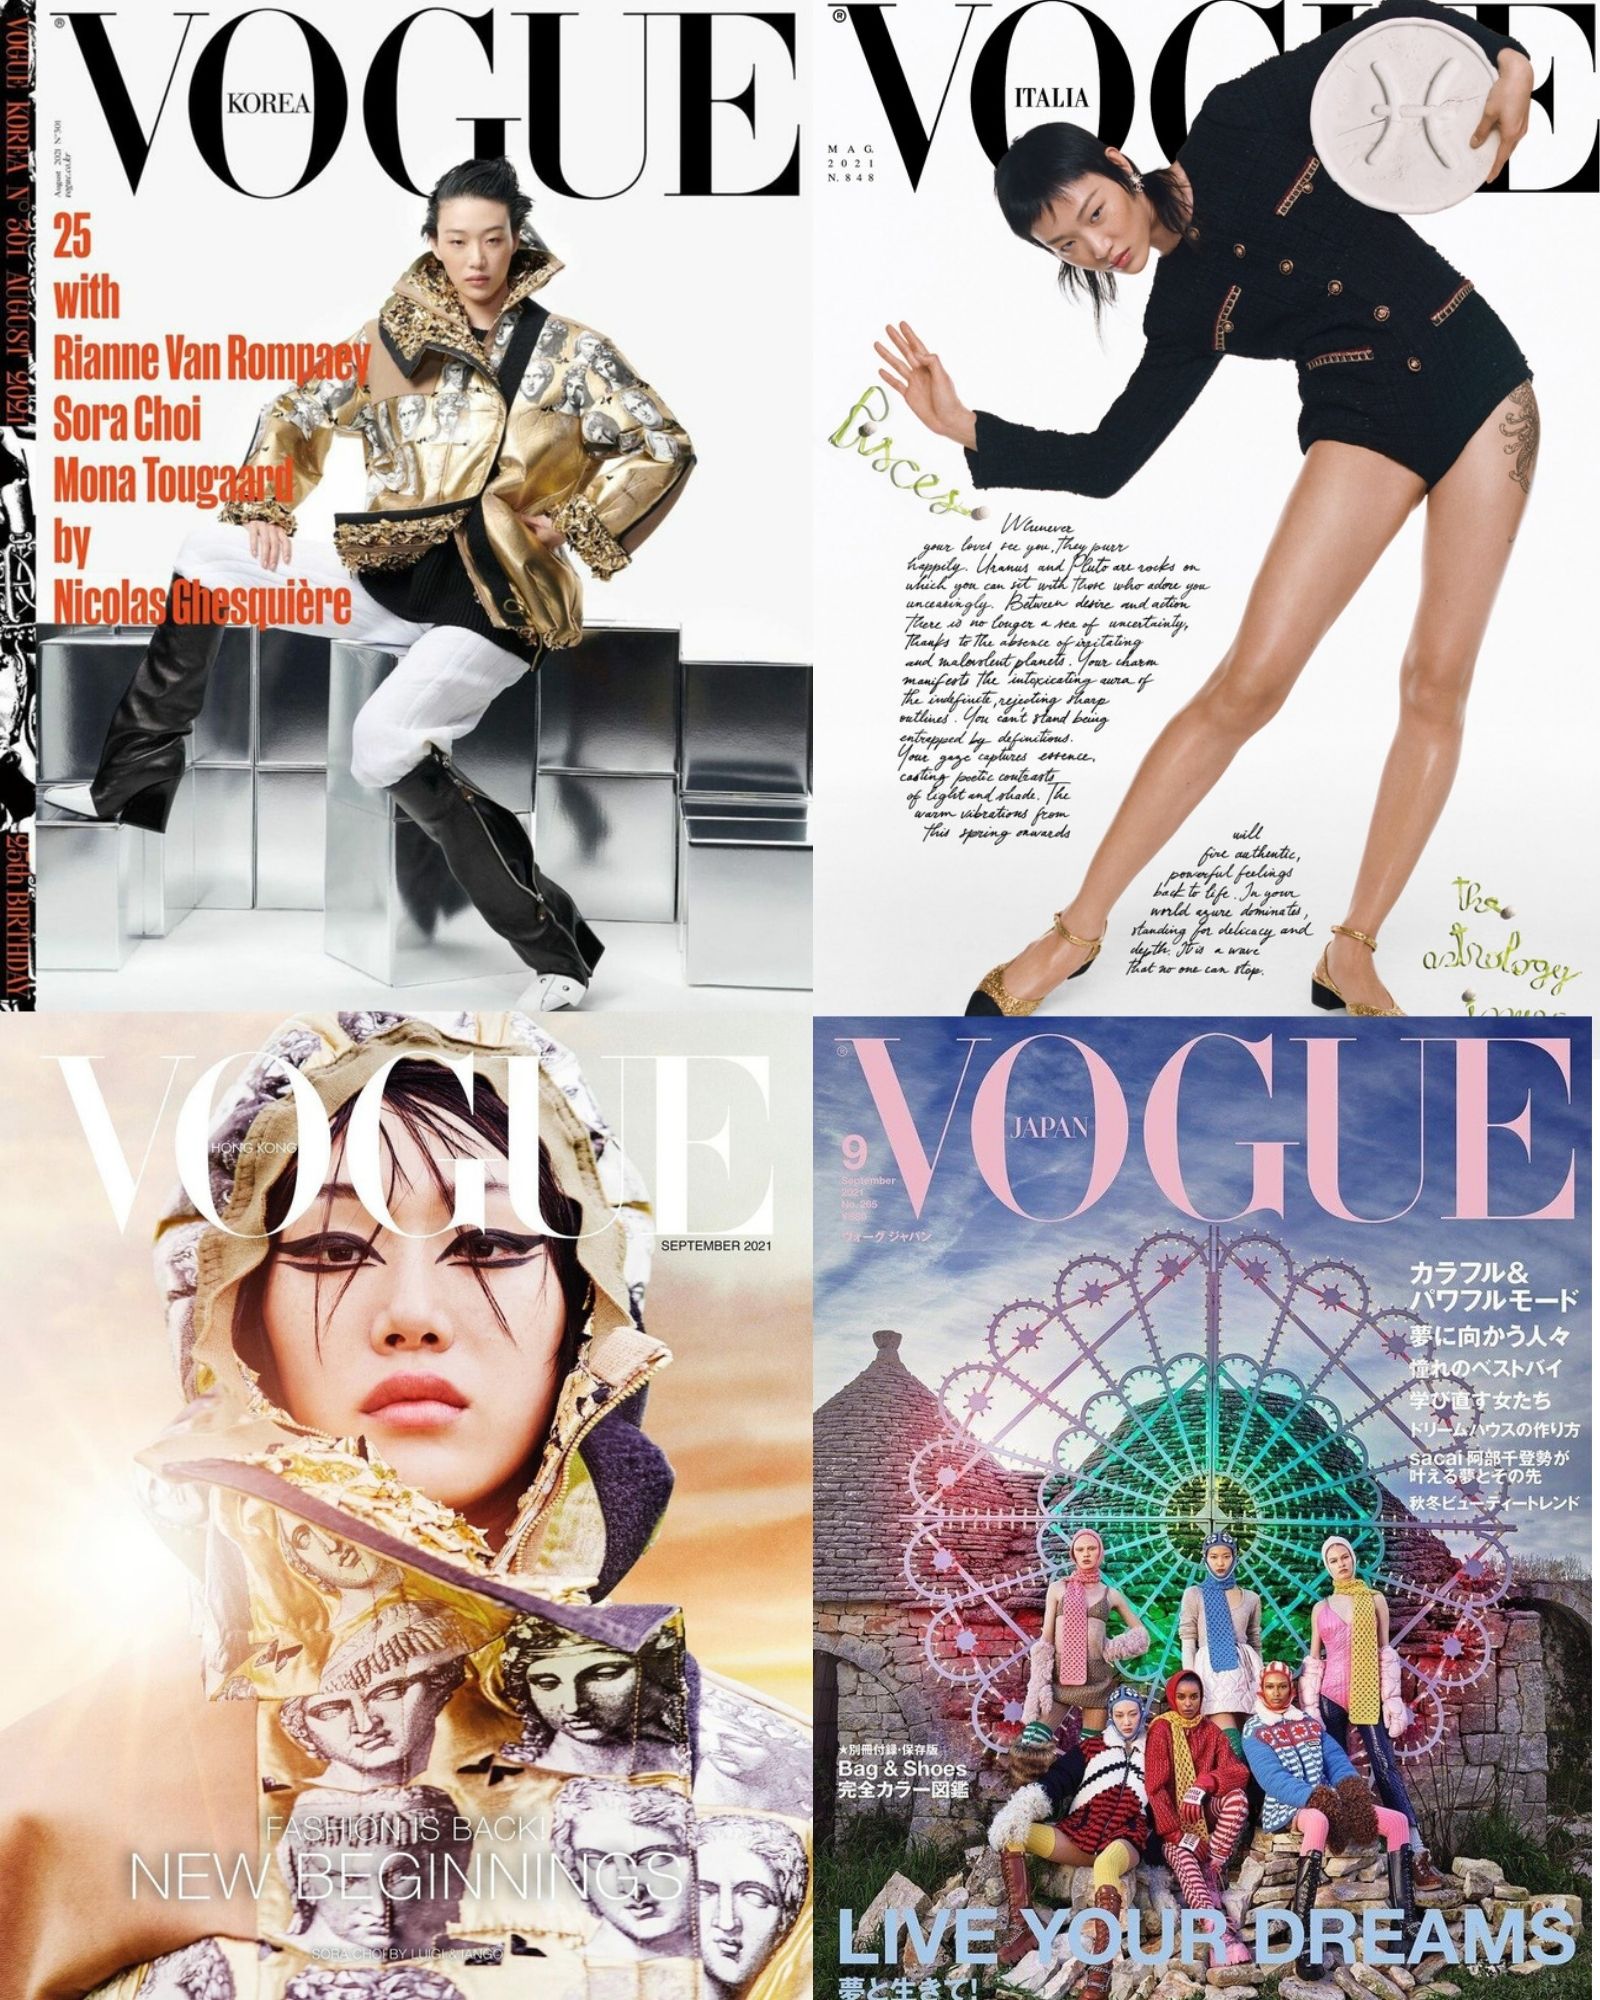 Tiếp đến là màn xuất hiện không thể ấn tượng hơn của Sora Choi trên 4 bìa tạp chí Vogue Italia (5/2021), Hàn Quốc (8/2021), Hồng Kông và Nhật Bản (9/2021). Thần thái chuyên nghiệp của người mẫu giúp cô có những dáng chụp và concept hoàn toàn dị biệt.